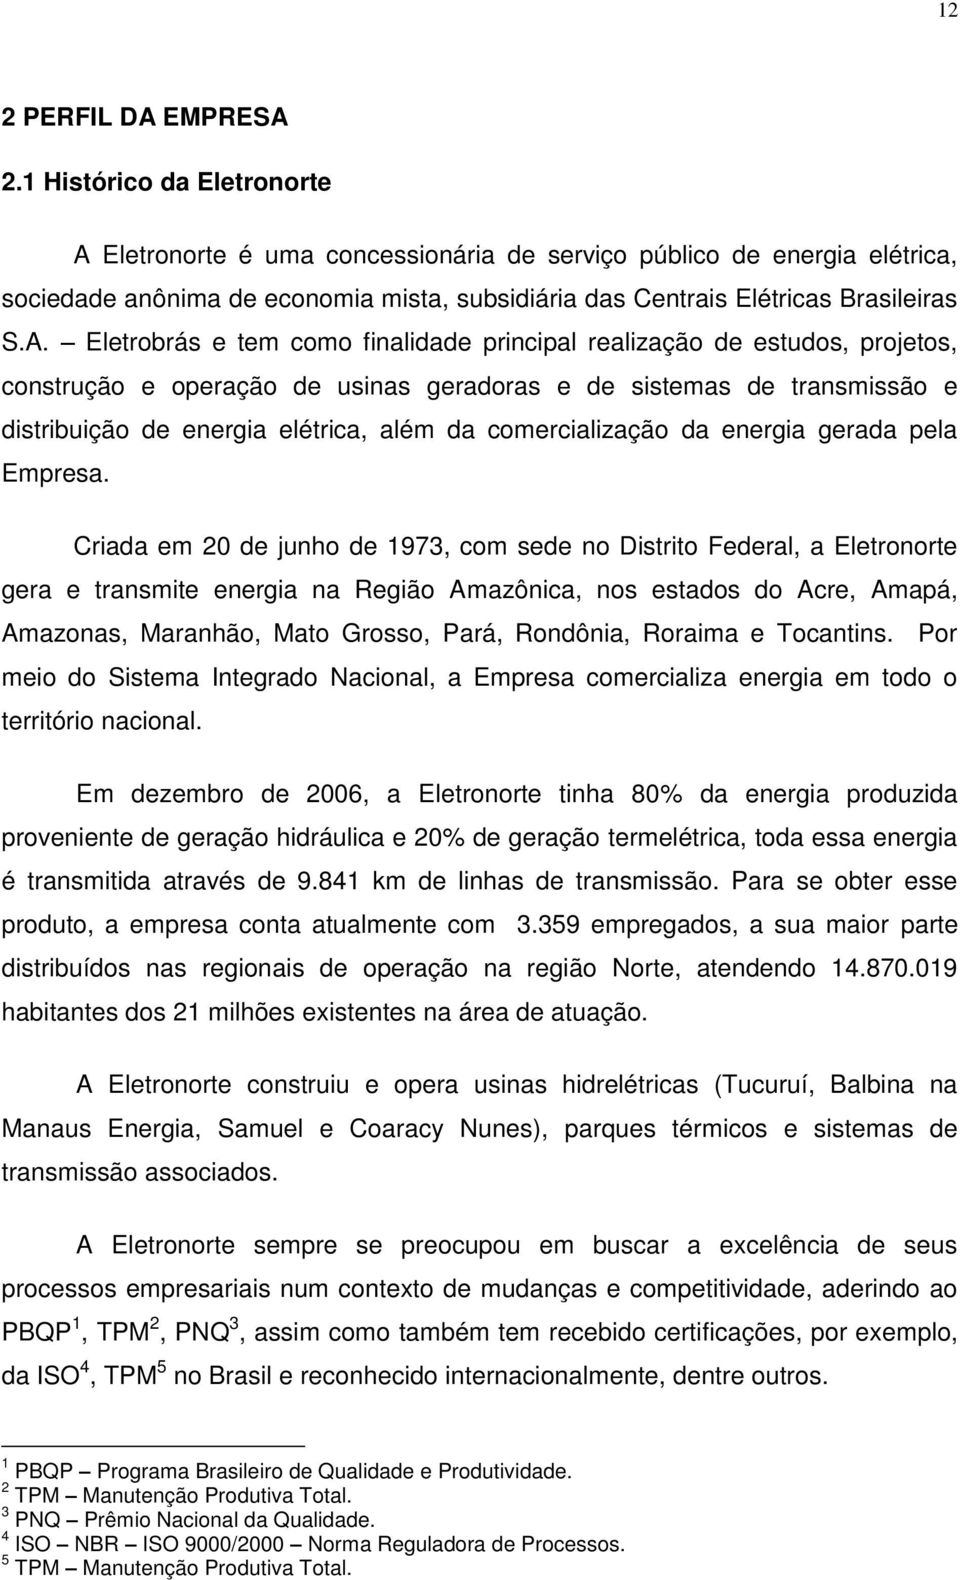 Eletronorte é uma concessionária de serviço público de energia elétrica, sociedade anônima de economia mista, subsidiária das Centrais Elétricas Brasileiras S.A.